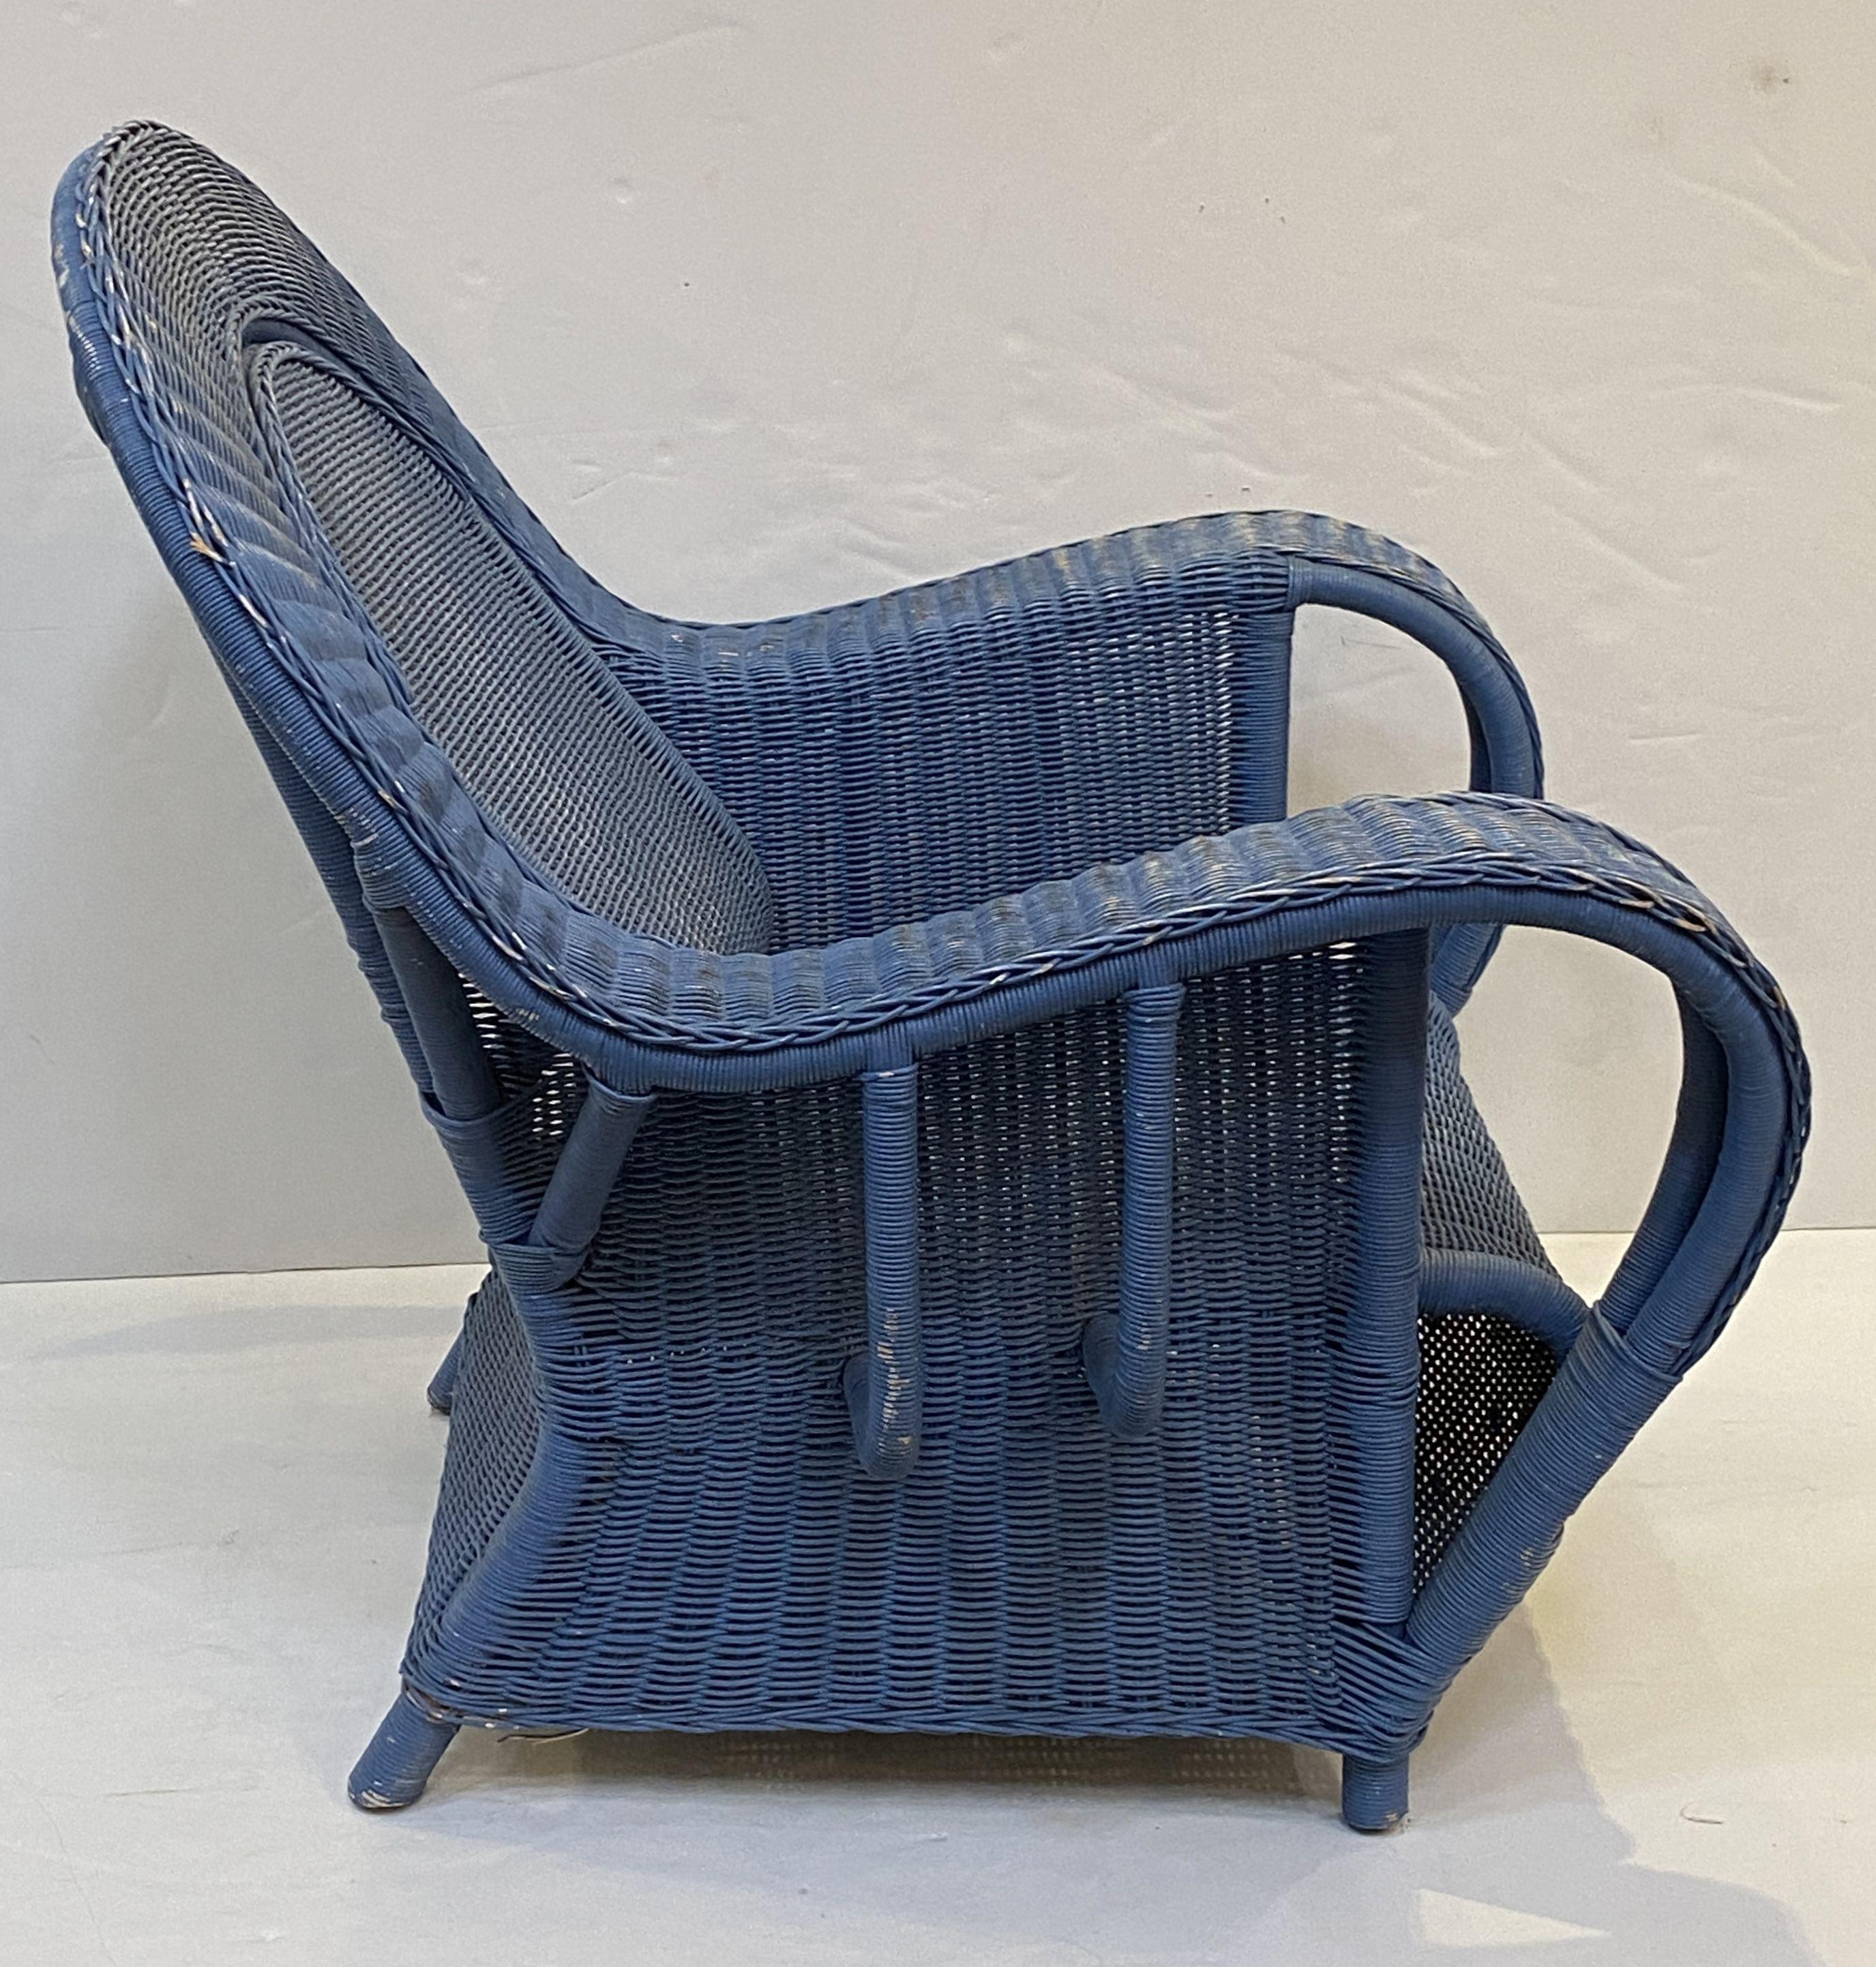 Ein feines Paar französischer geflochtener Loungesessel im Art-Déco-Stil. Jeder Sessel hat eine schöne, verblasste blaue Lackierung, eine geschwungene Rückenlehne und Armlehnen, einen bequemen Sitz und ruht auf einem vierbeinigen